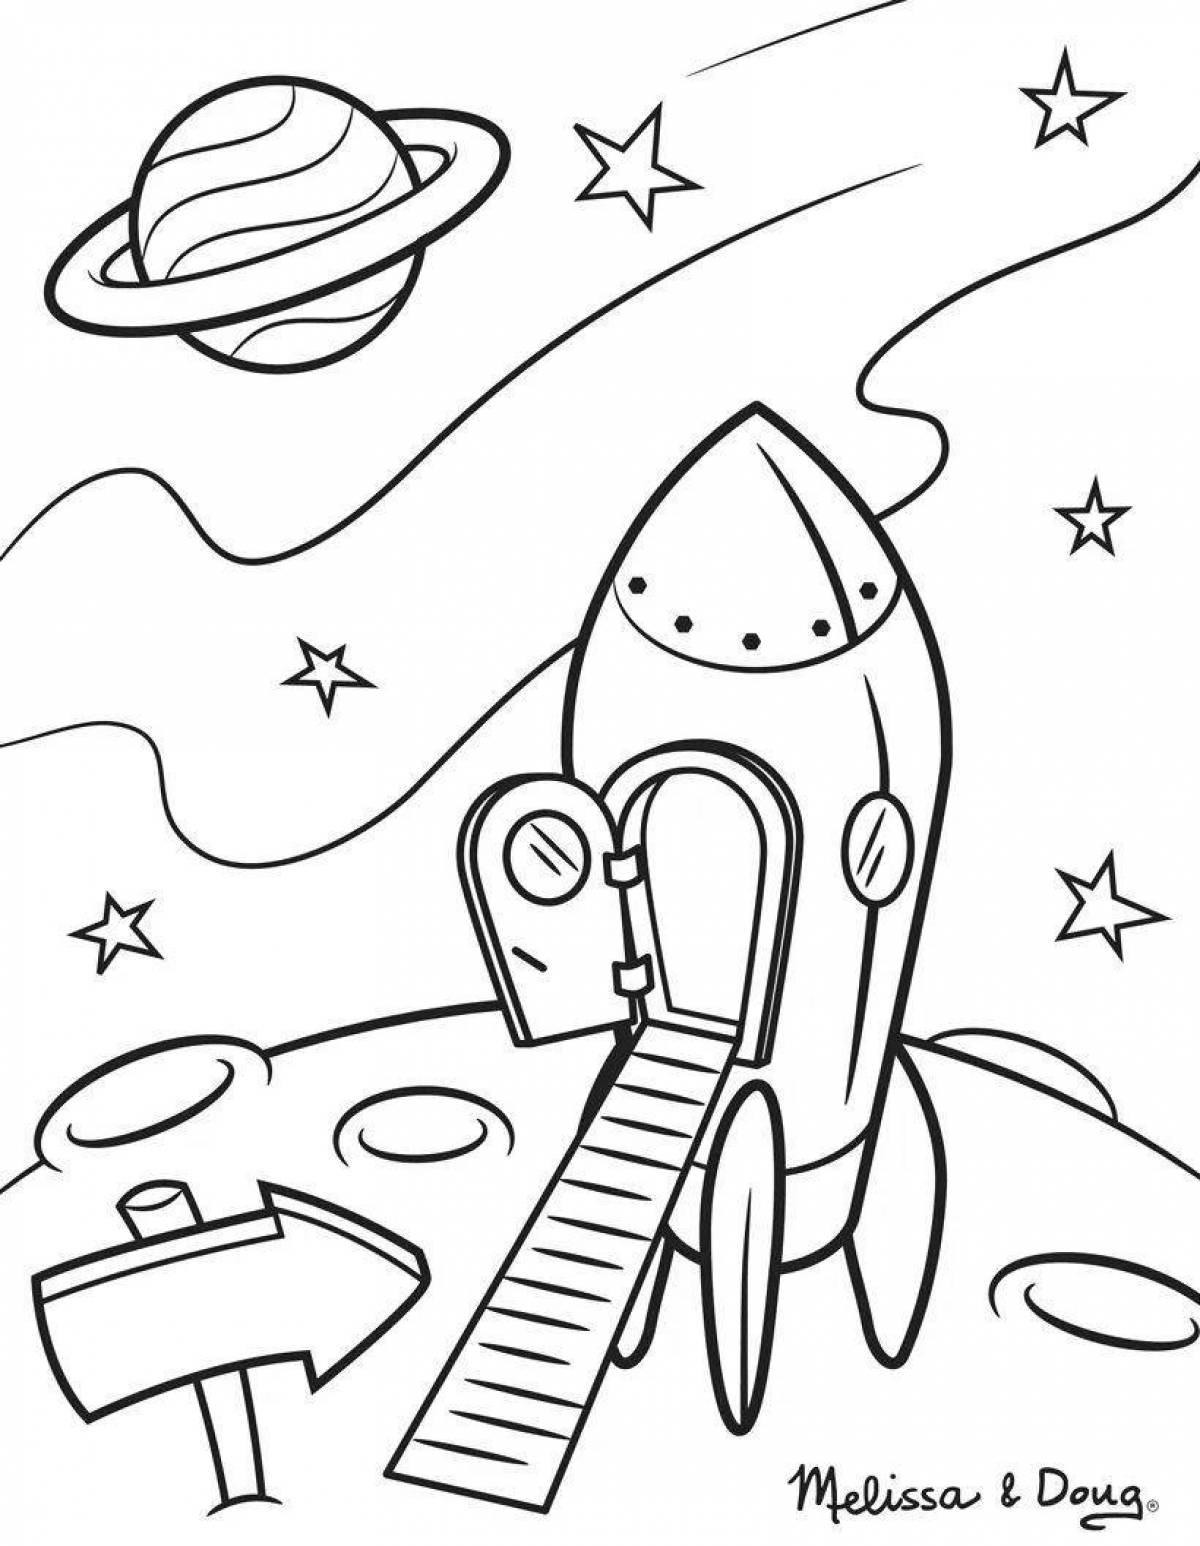 Раскраска про космос для детей 3 лет. Раскраска. В космосе. Космос раскраска для детей. Космические раскраски для детей. Рисунок на тему космос раскраска.